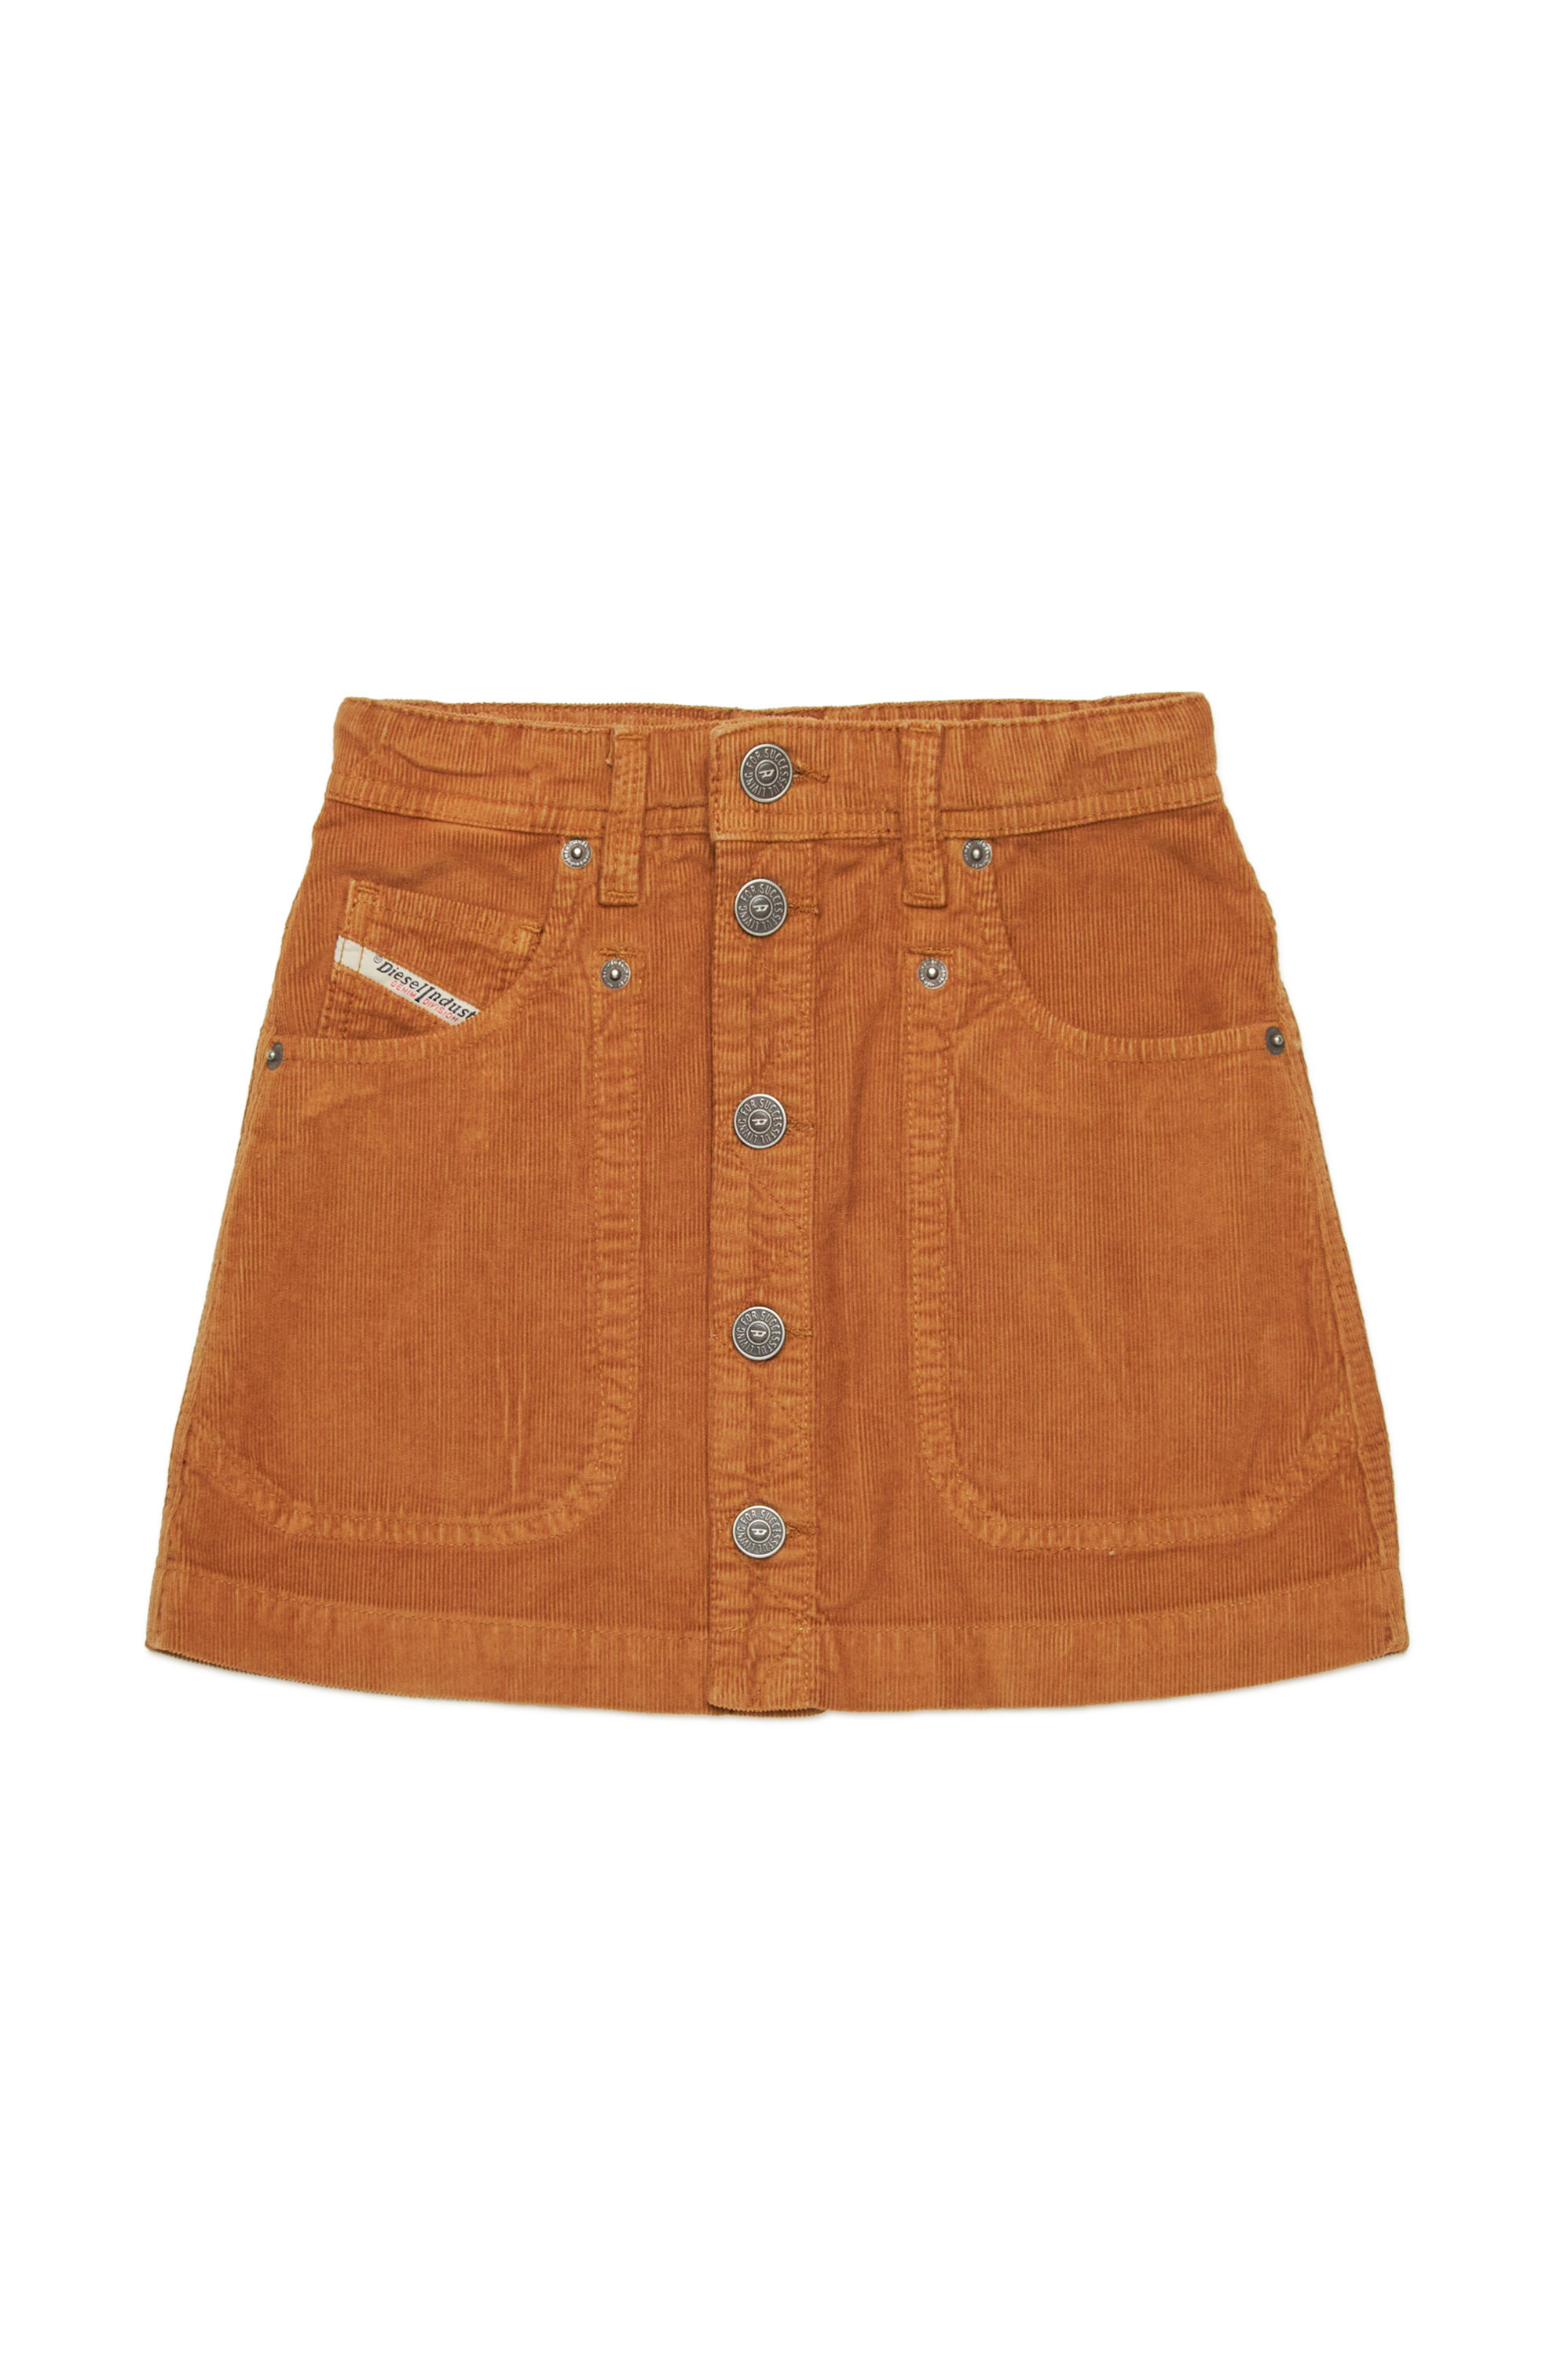 Diesel - GEALBUS, Woman 5-pocket skirt in stretch corduroy in Brown - Image 1